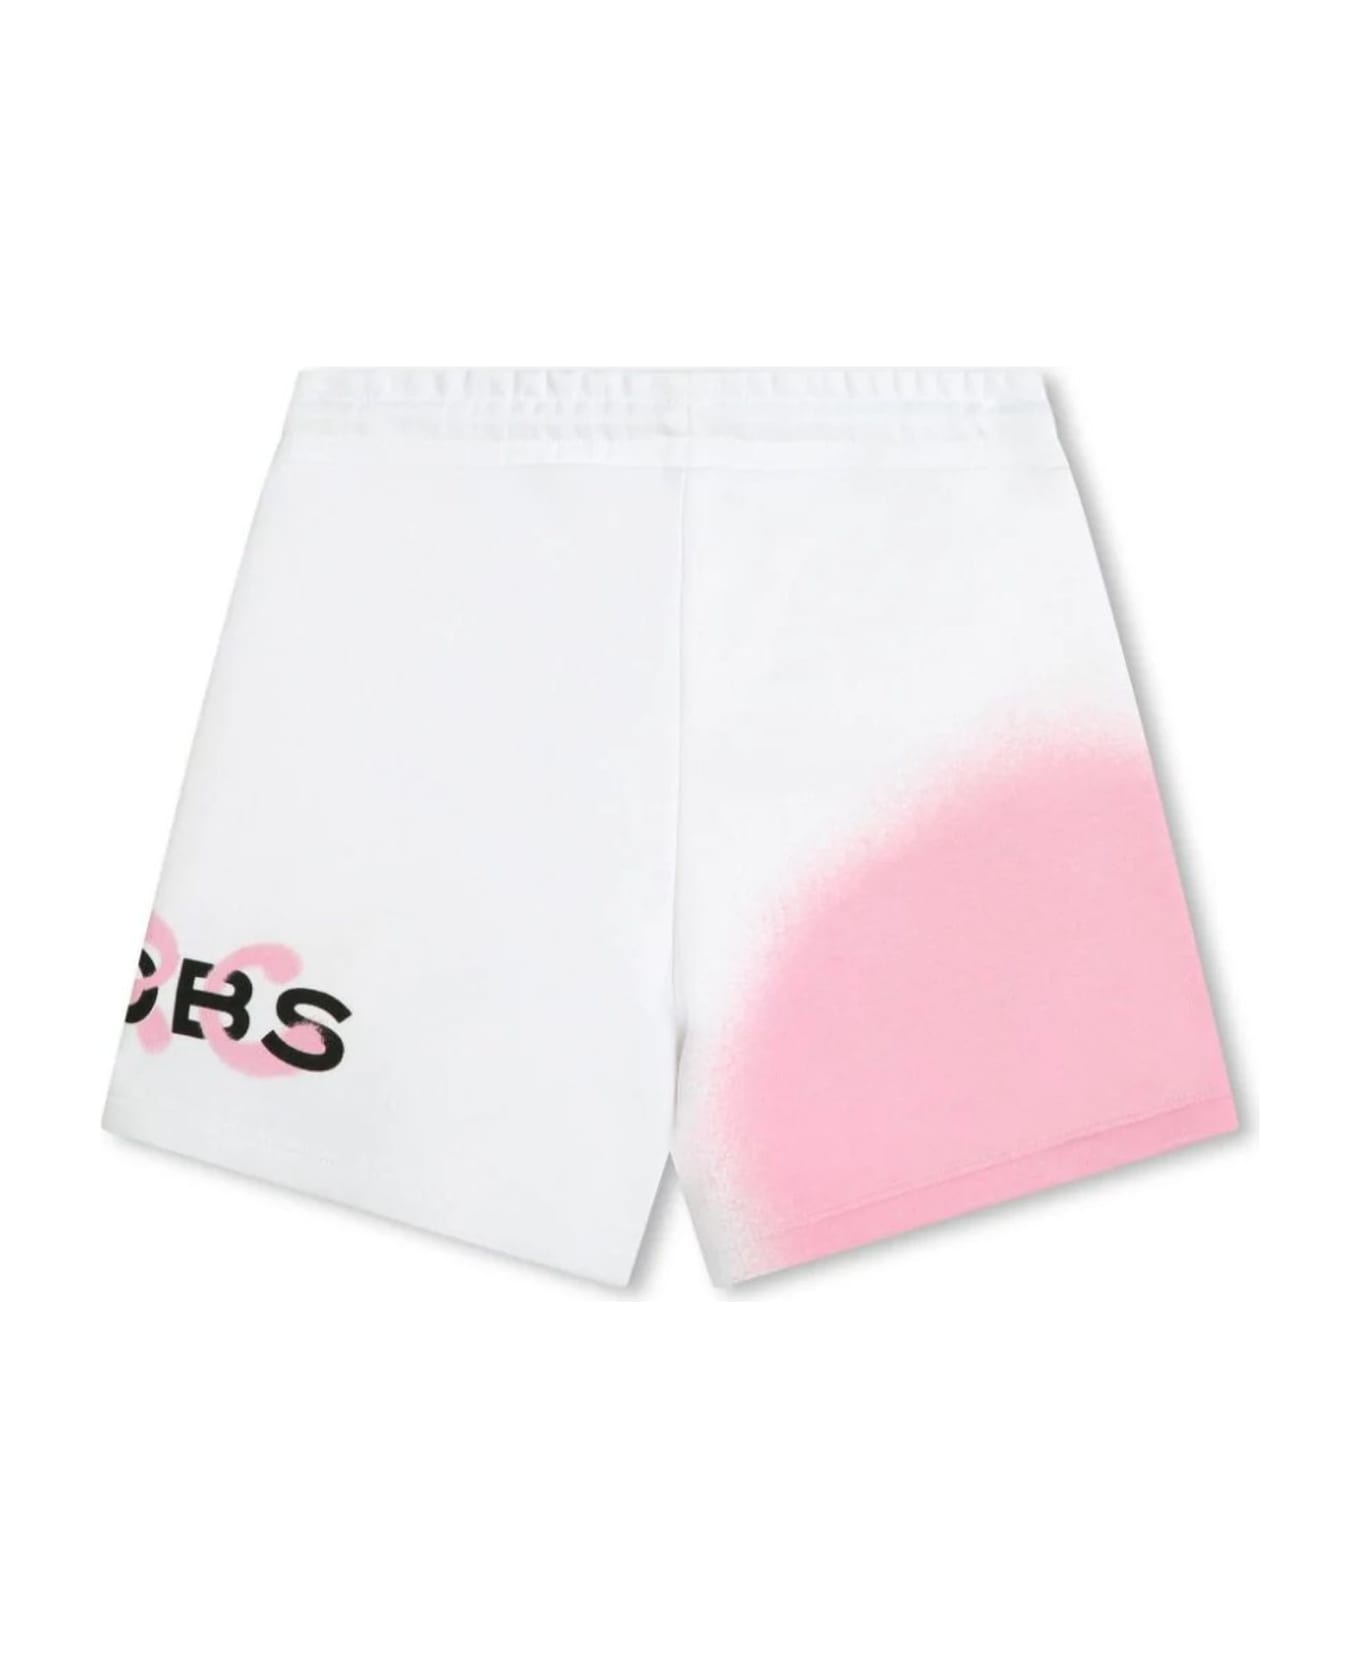 Marc Jacobs Shorts White - White